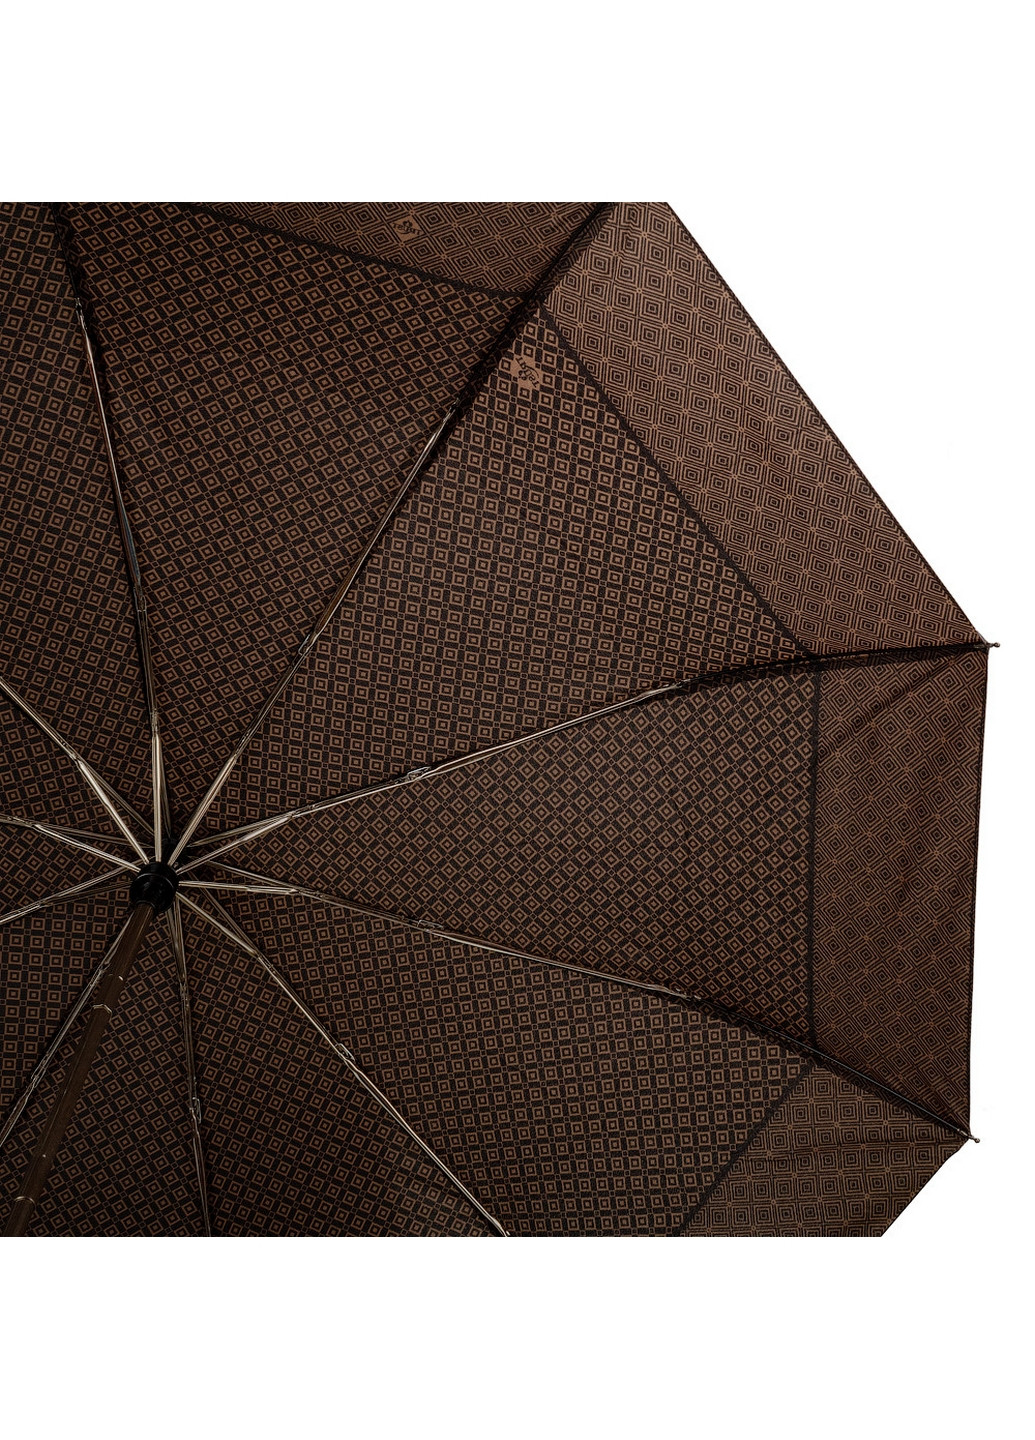 Складной мужской зонт автомат 107 см Trust (260285406)